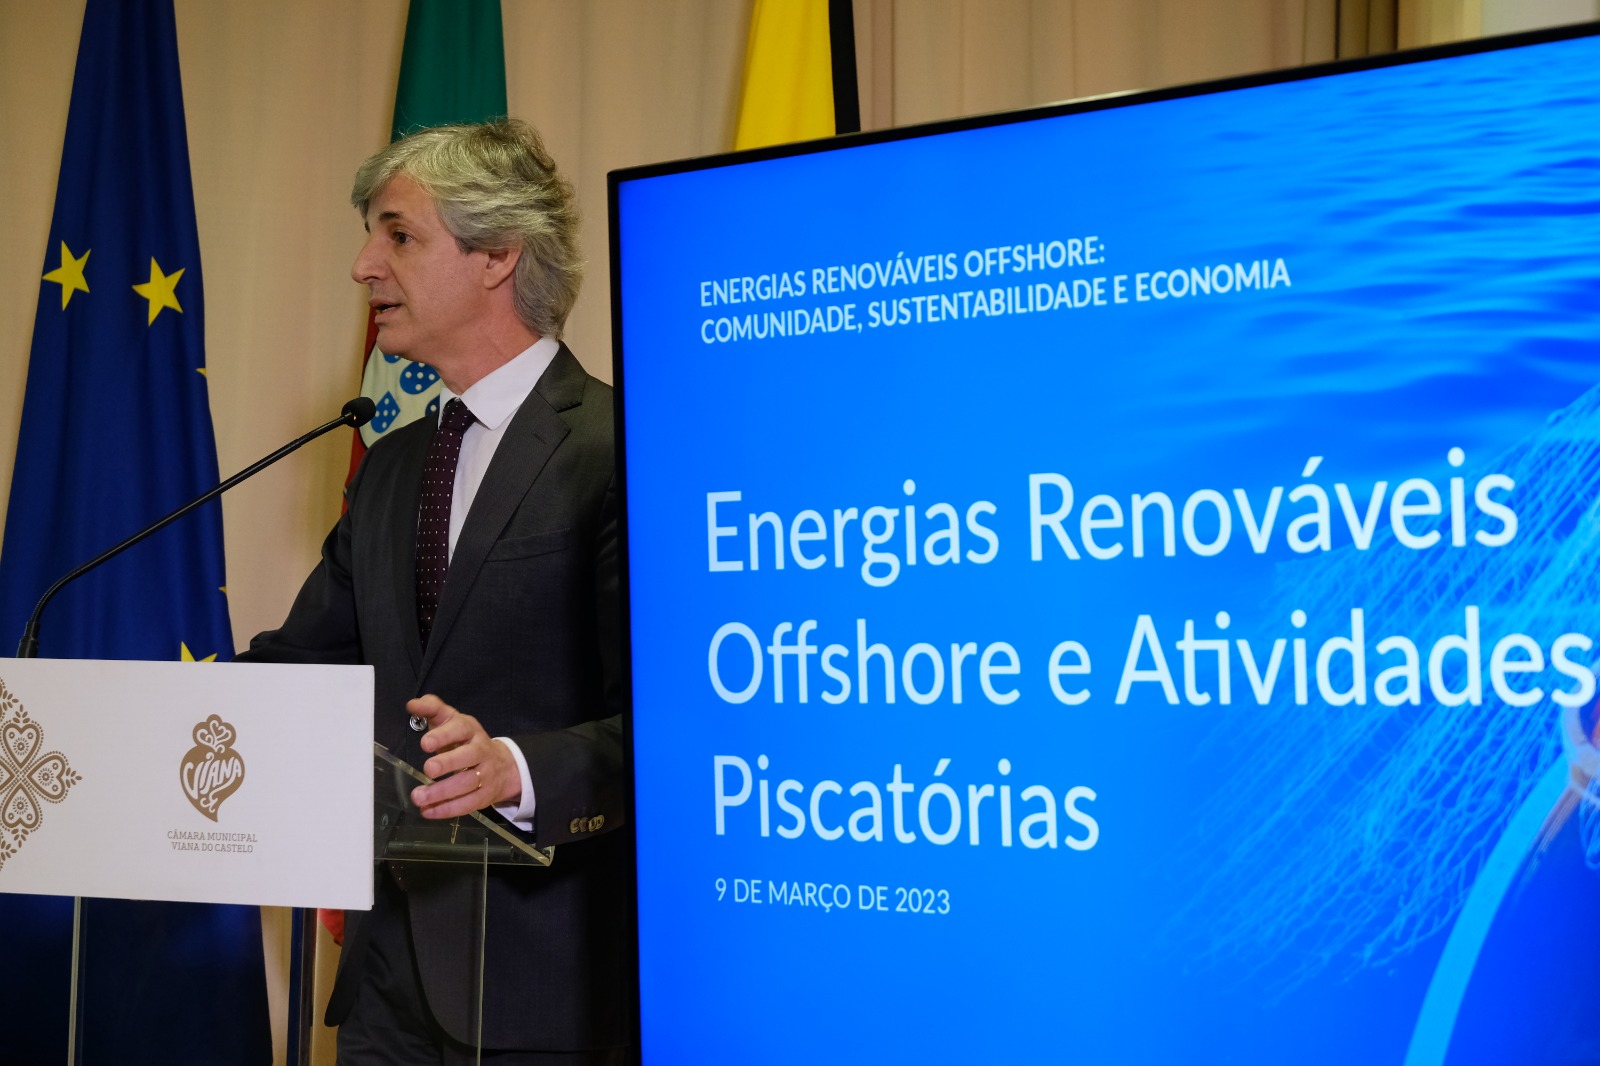 seminario energias renovaveis offshore (4)